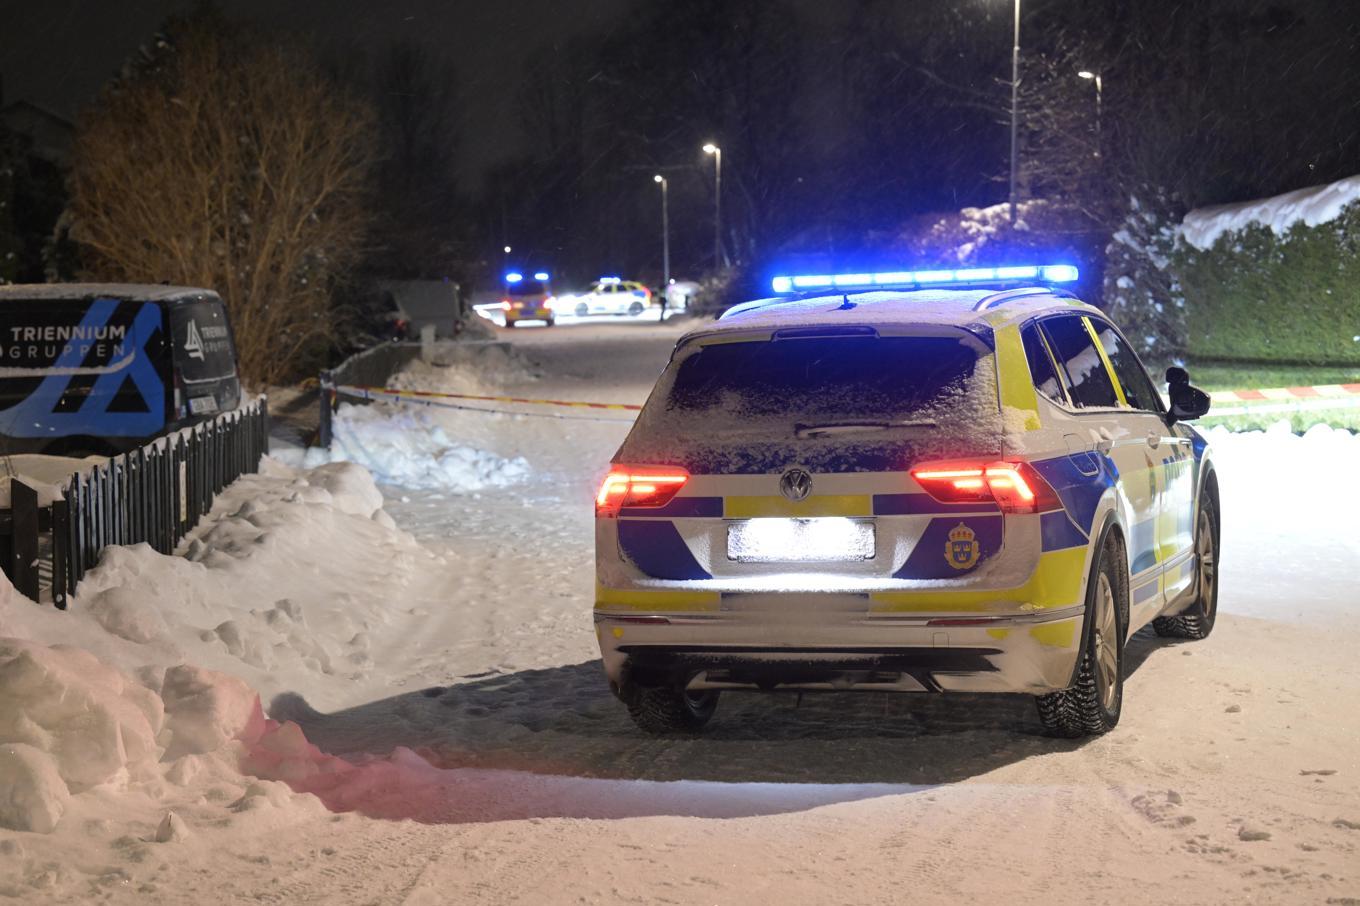 Polis på plats efter explosionen i Lövstalöt norr om Uppsala den 2 december. Foto: Fredrik Sandberg/TT